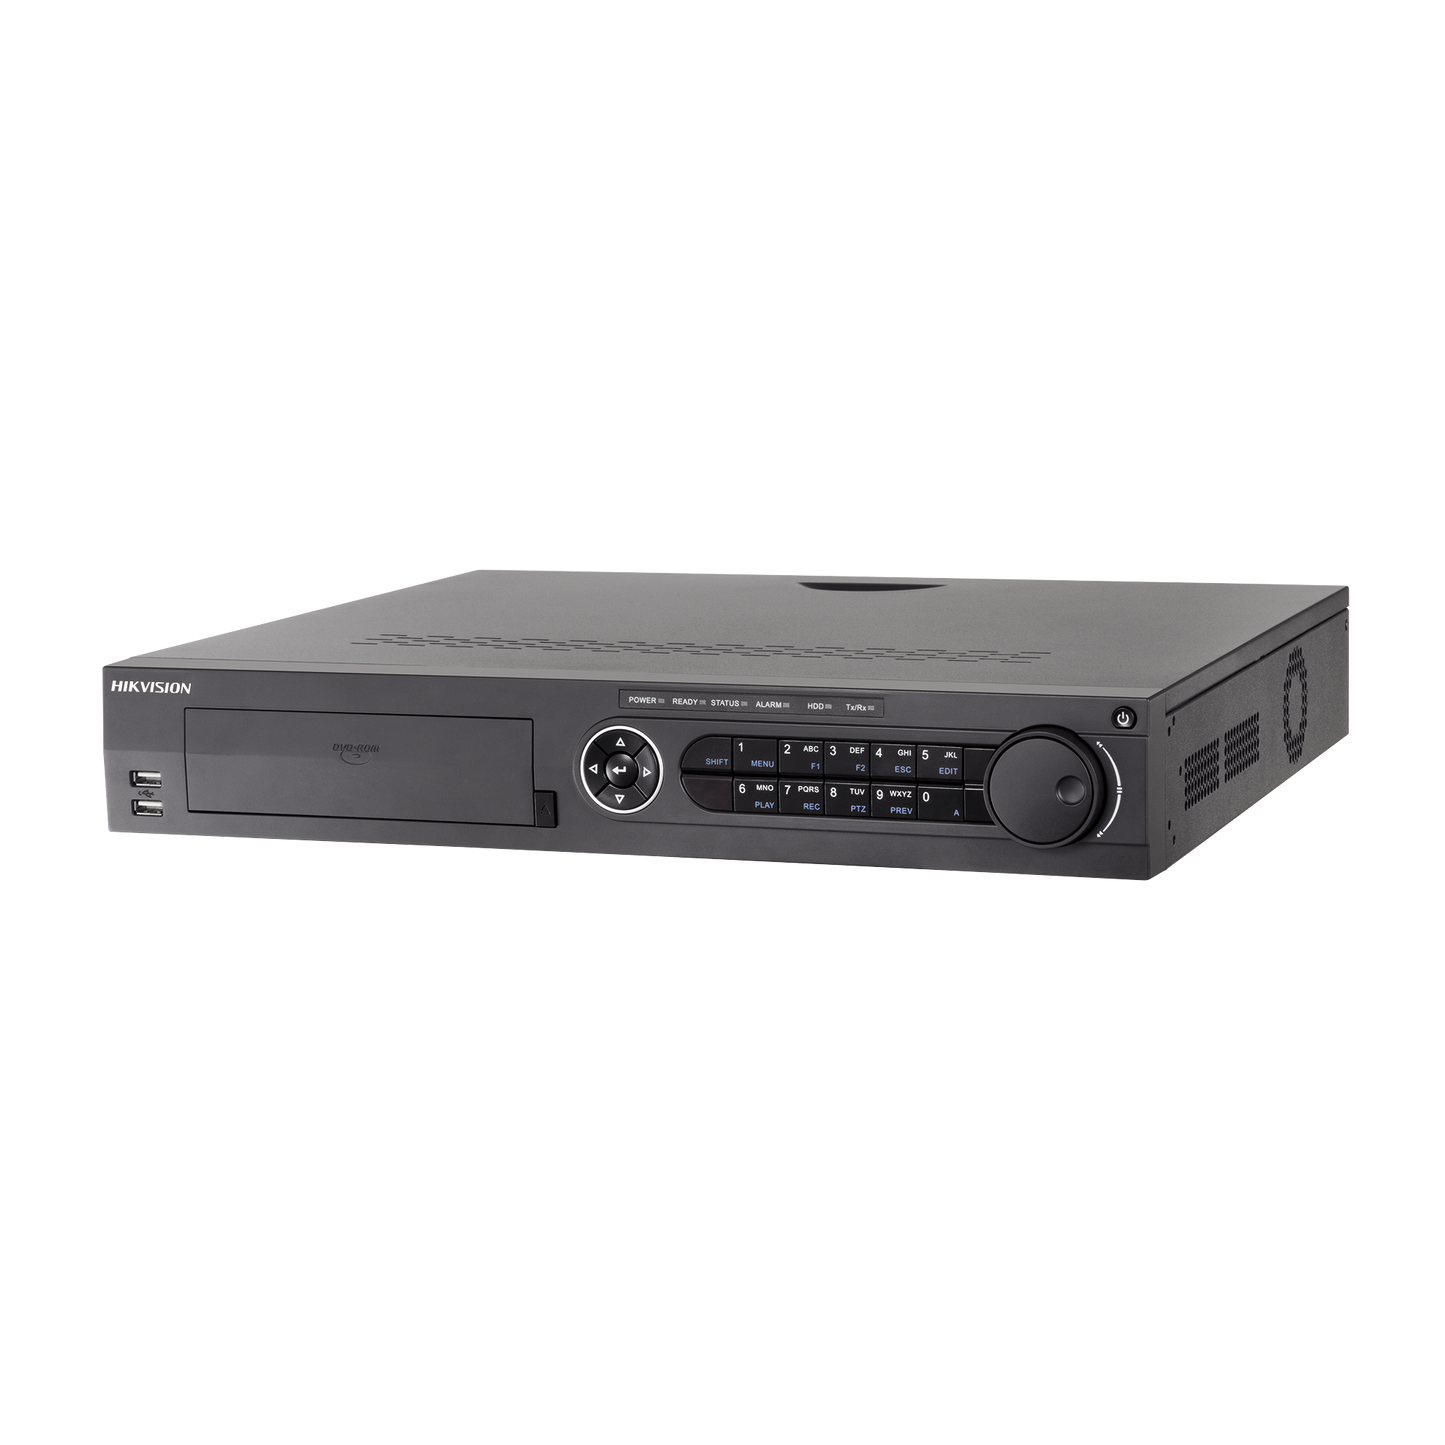 DVR 16 Canales TurboHD + 16 Canales IP/ 8 Megapixel/ 4 Bahías de Disco Duro / 4 Canales de Audio / Videoanalisis / 16 Entradas de Alarma / Arreglo RAID / Soporta POS